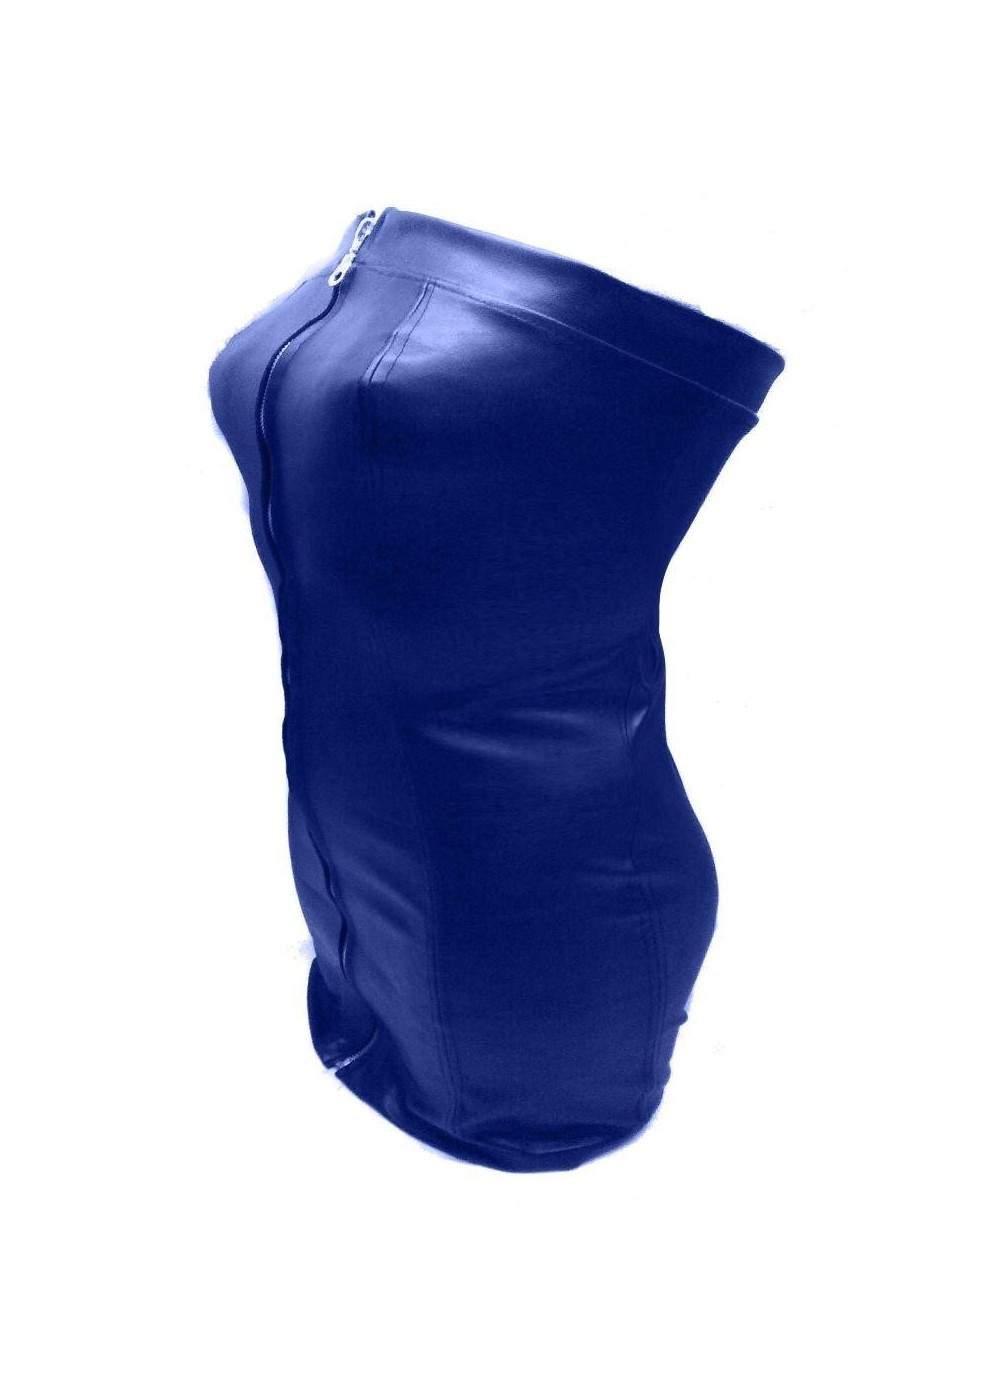 Sehr weiches Leder Kleid blau Rabatt 11% - 